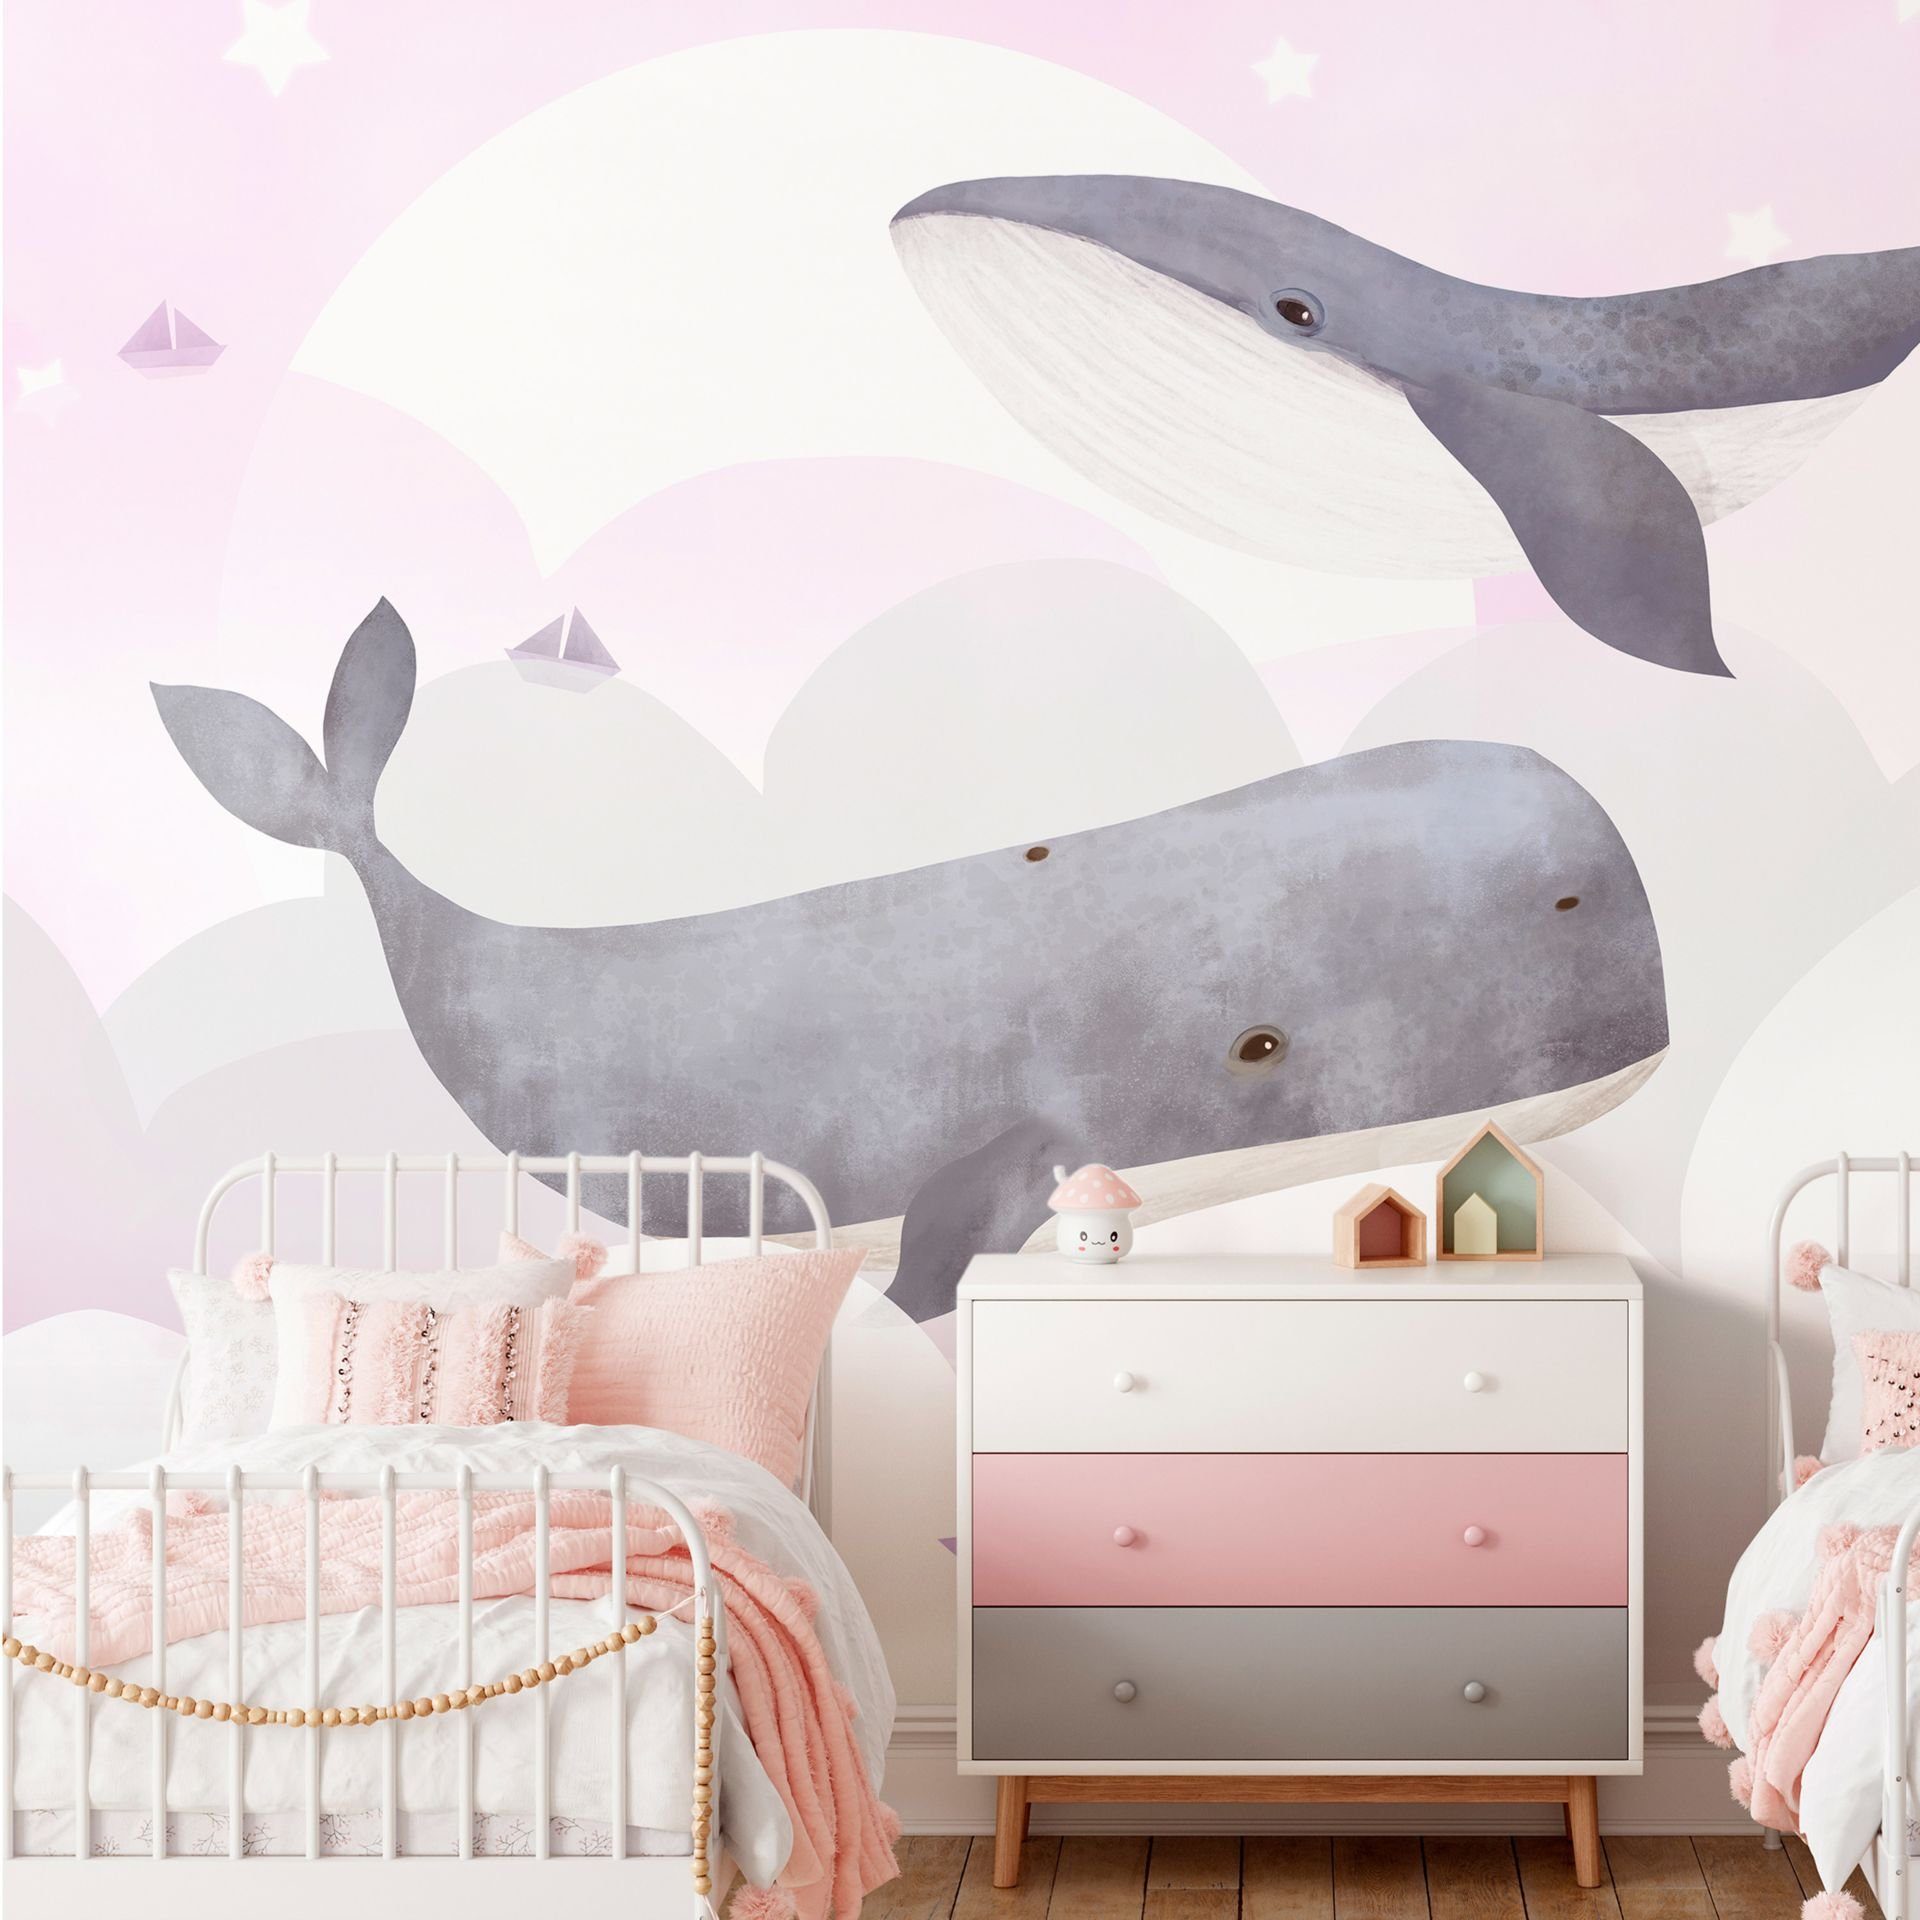 KUNSTLOFT Vliestapete Dream Of Whales - Second Variant 1x0.7 m, halb-matt, lichtbeständige Design Tapete